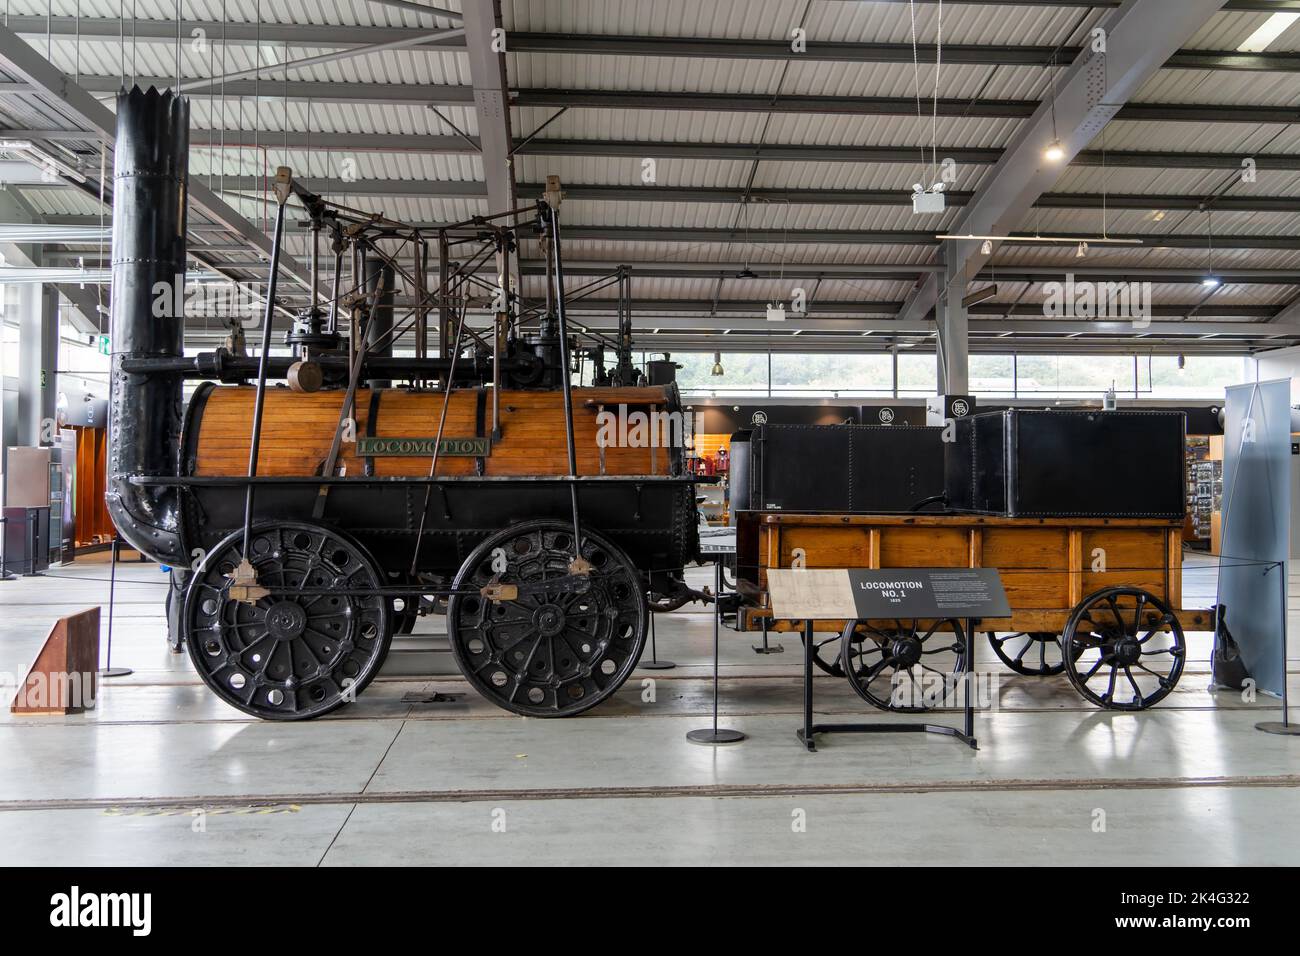 La locomozione di Stephenson n° 1 è in mostra nel museo della locomozione a Shildon, contea di Durham, Regno Unito. Foto Stock